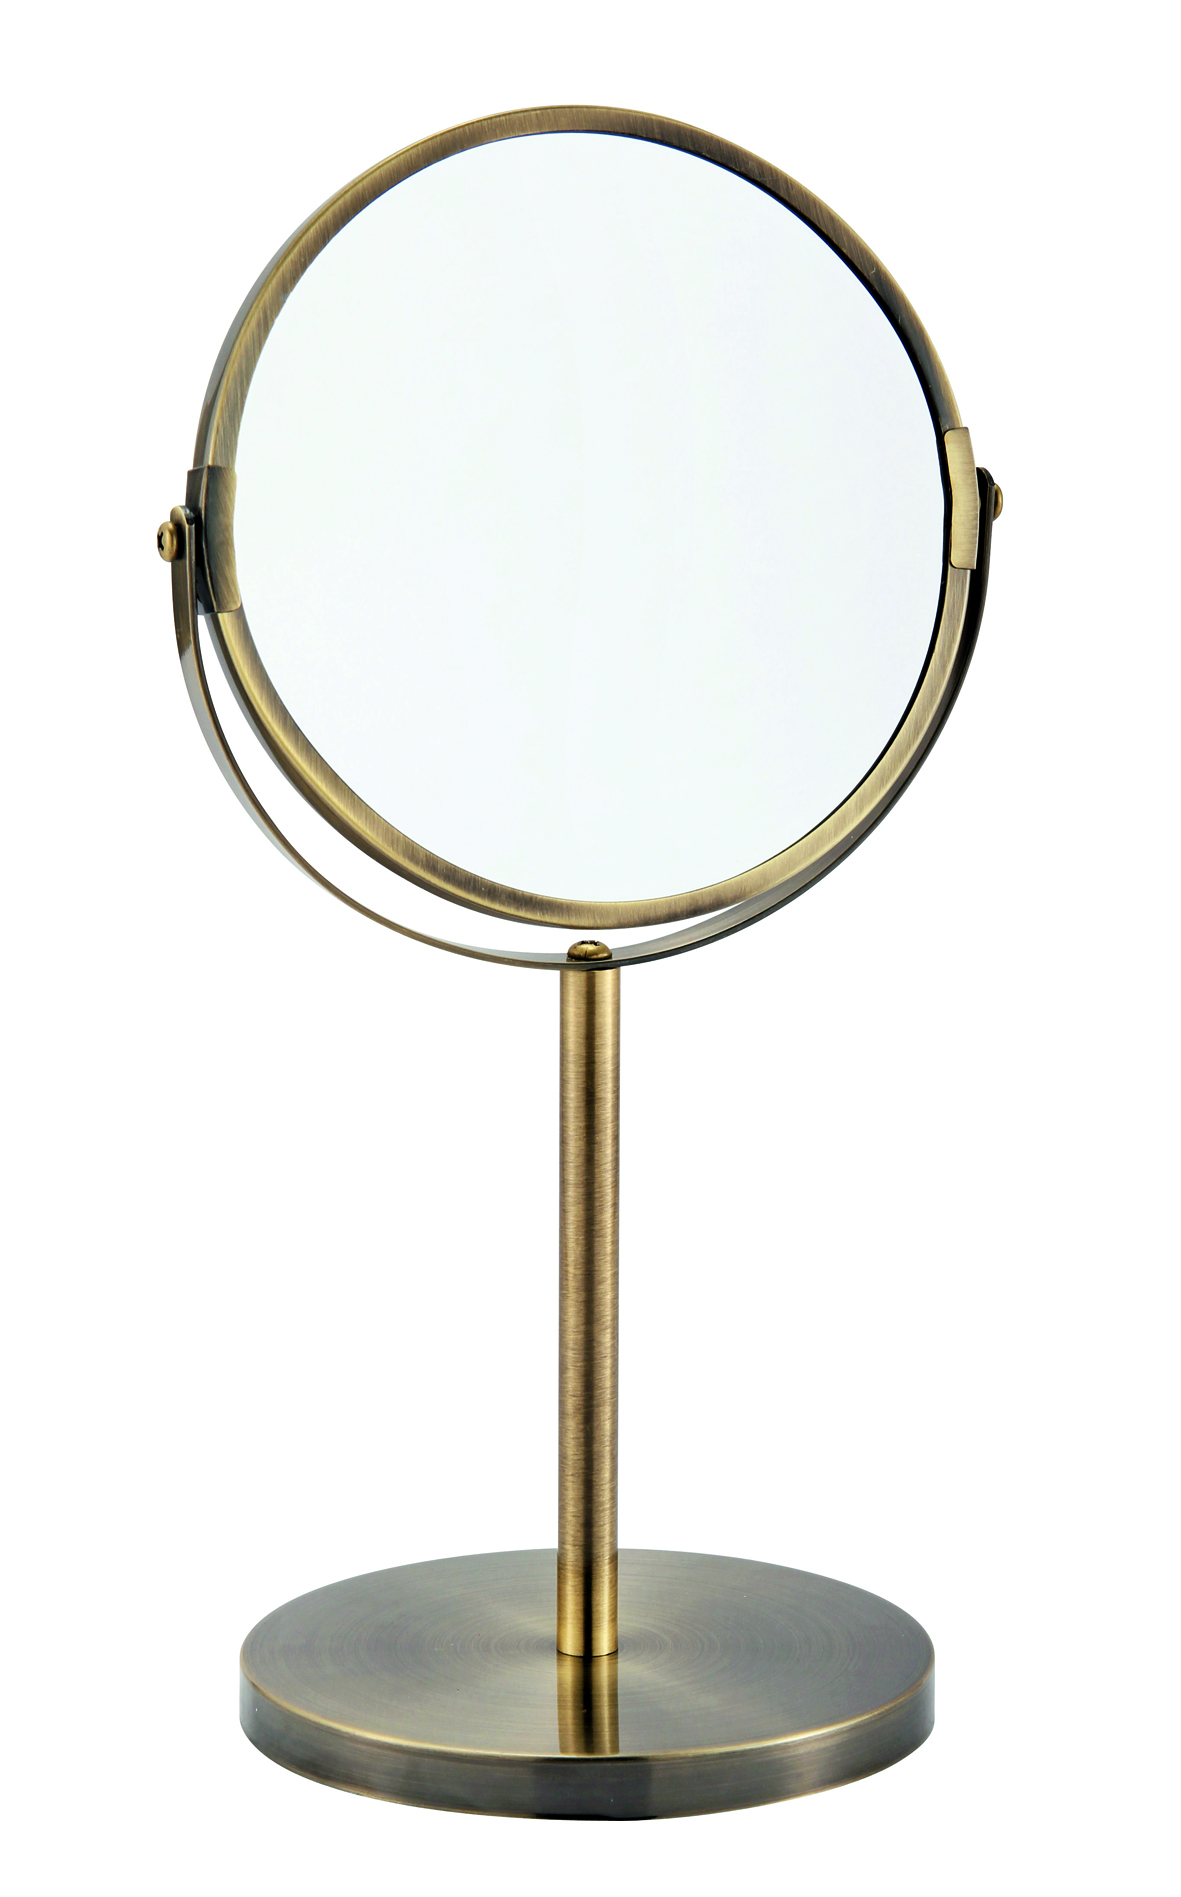 Двухстороннее зеркало купить. Зеркало настольное. Зеркало настольное латунь. Зеркало настольное косметическое бронза. Зеркало круглое настольное.